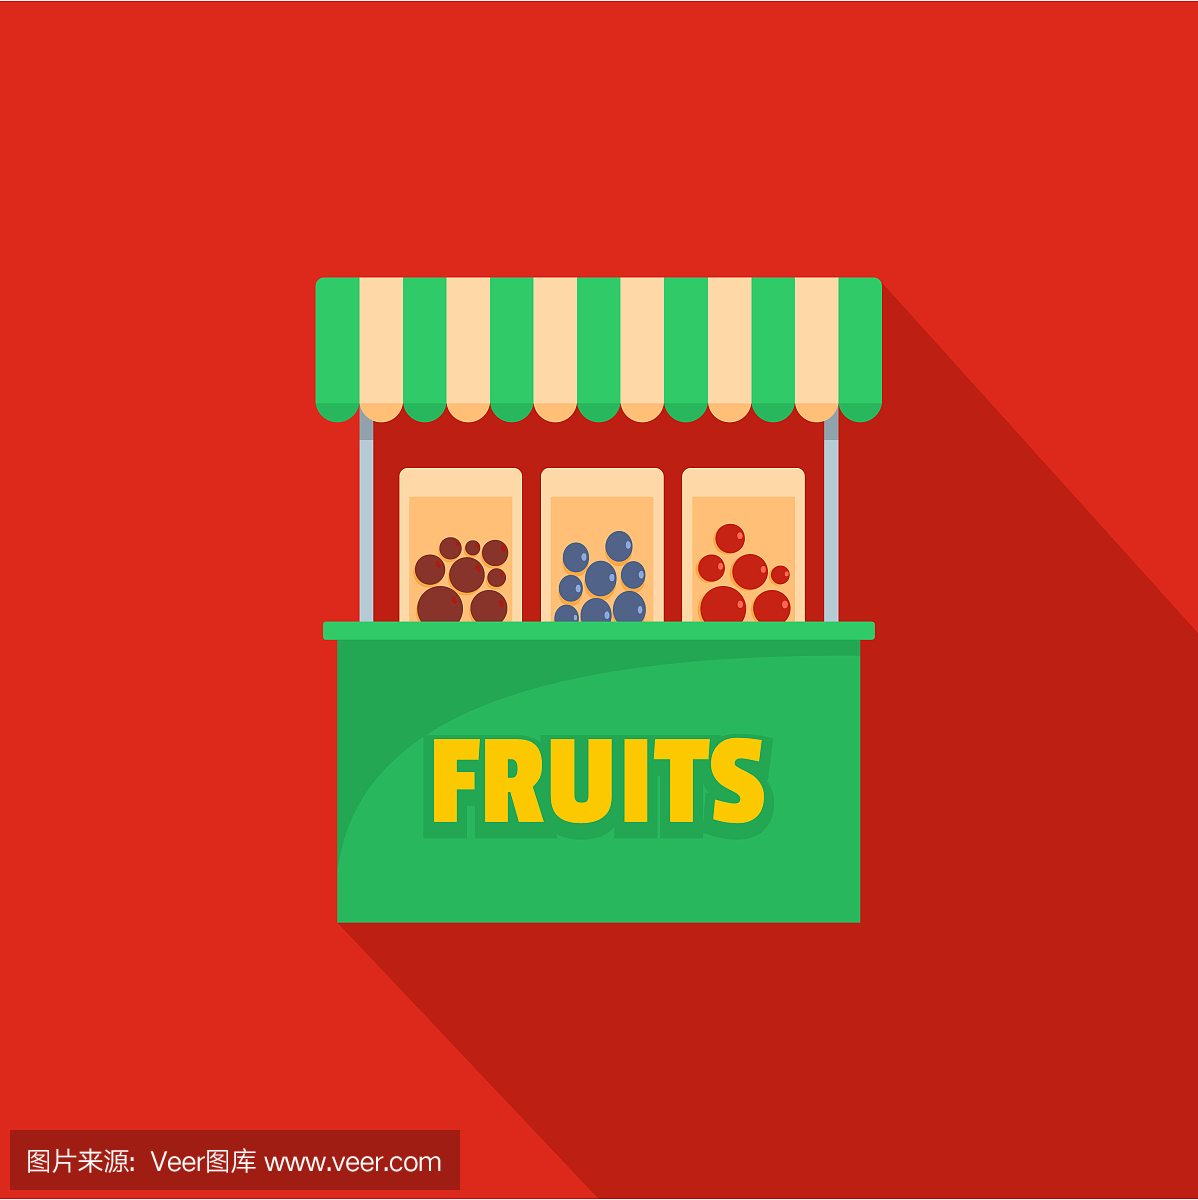 水果销售图标,扁平化风格。